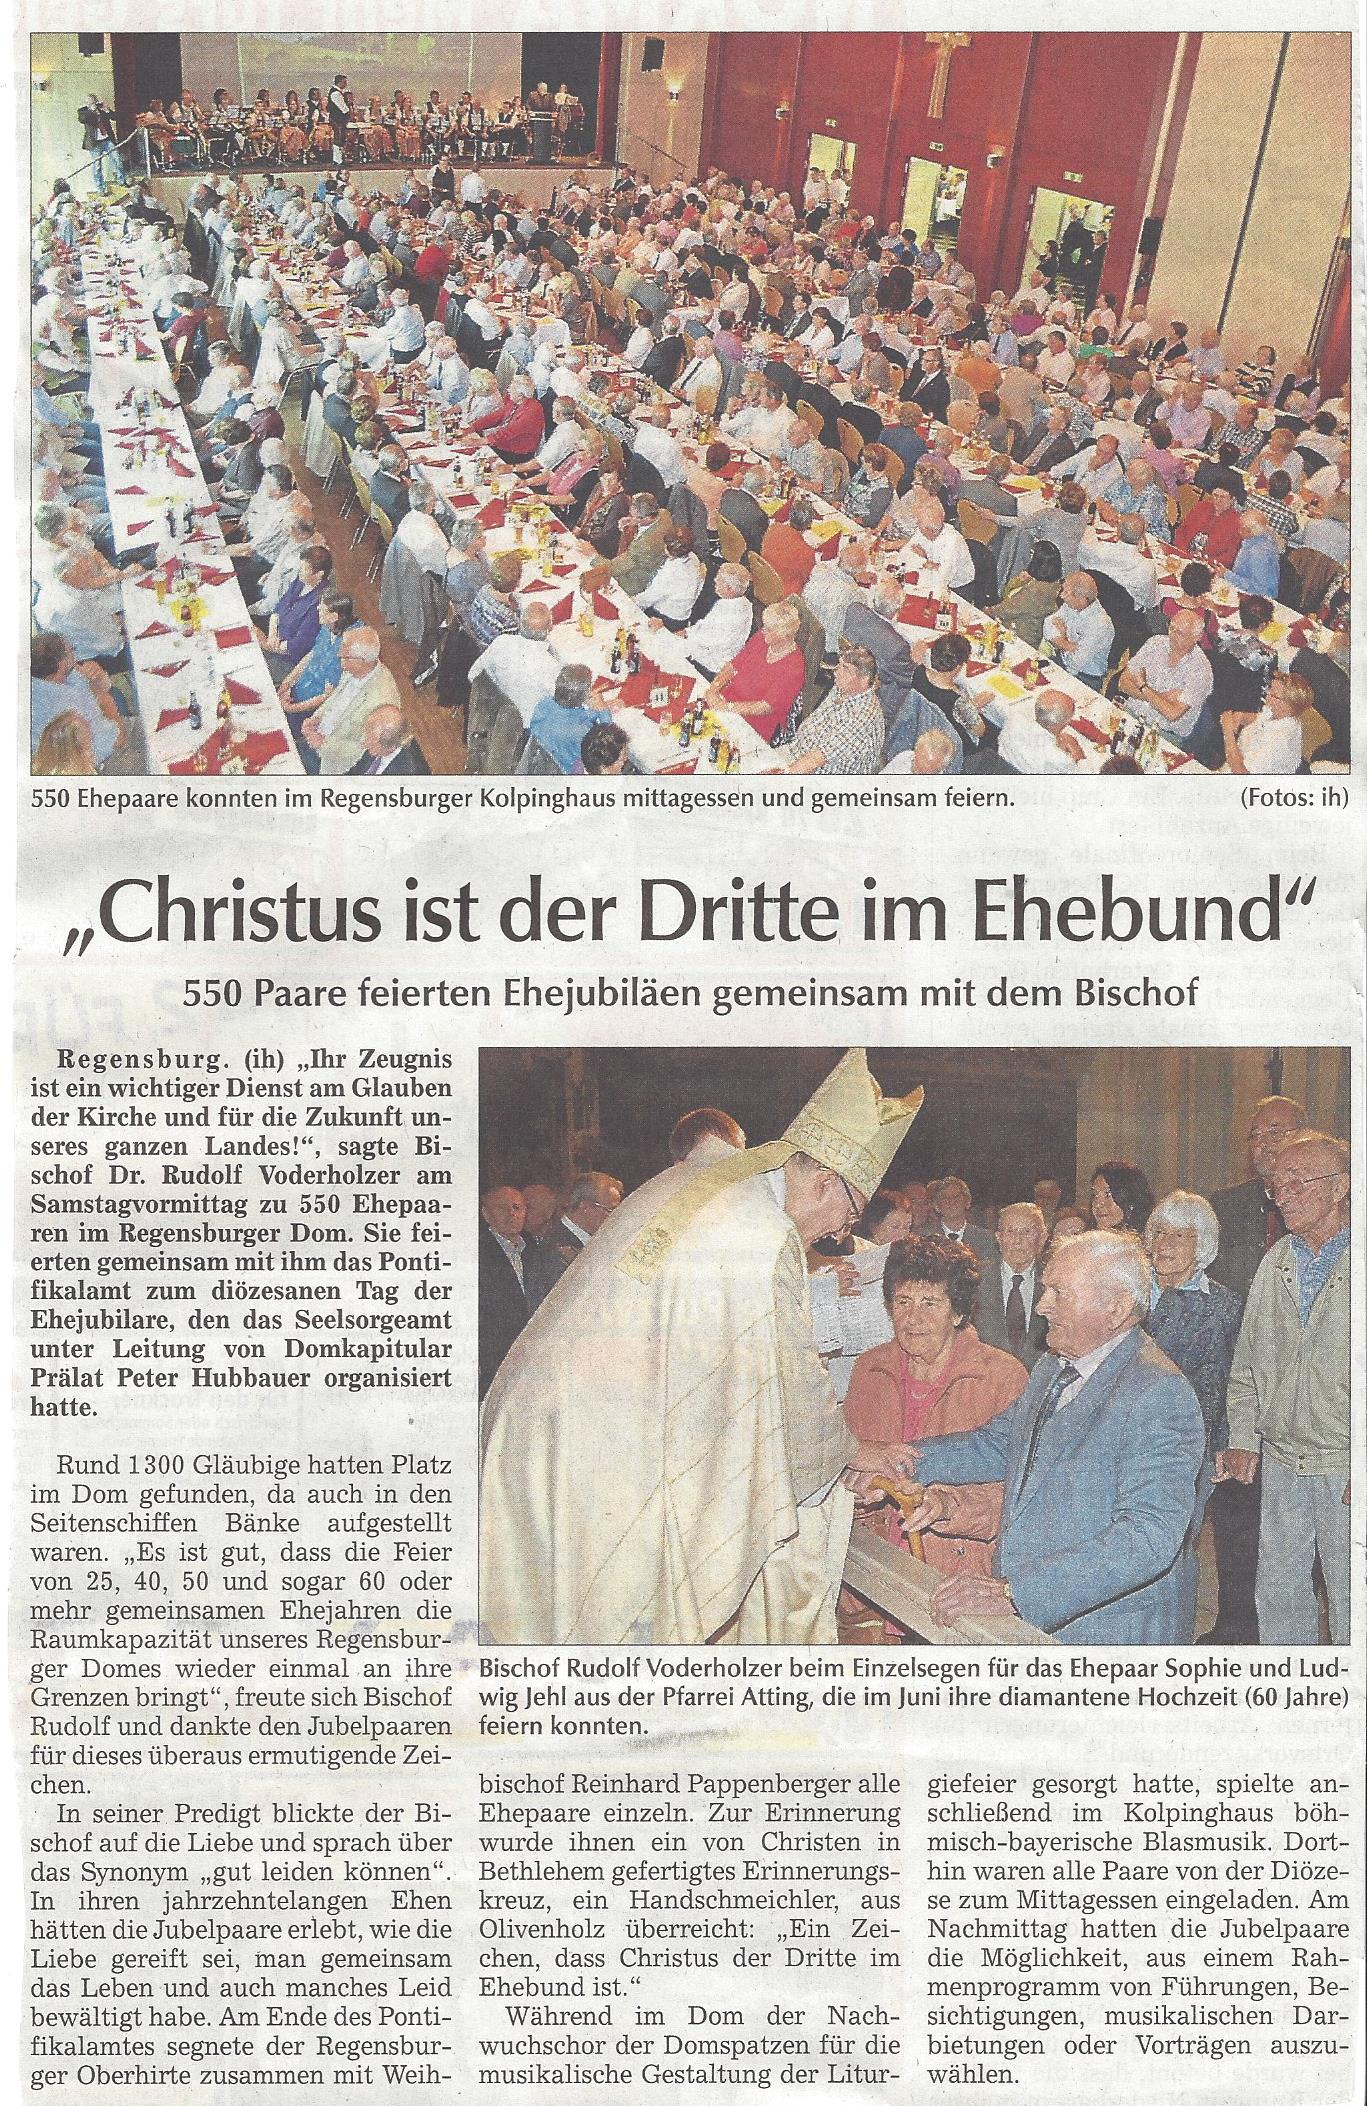 presseartikel_attinger_beim_ehejubiläum_der_diözese_in_regensburg